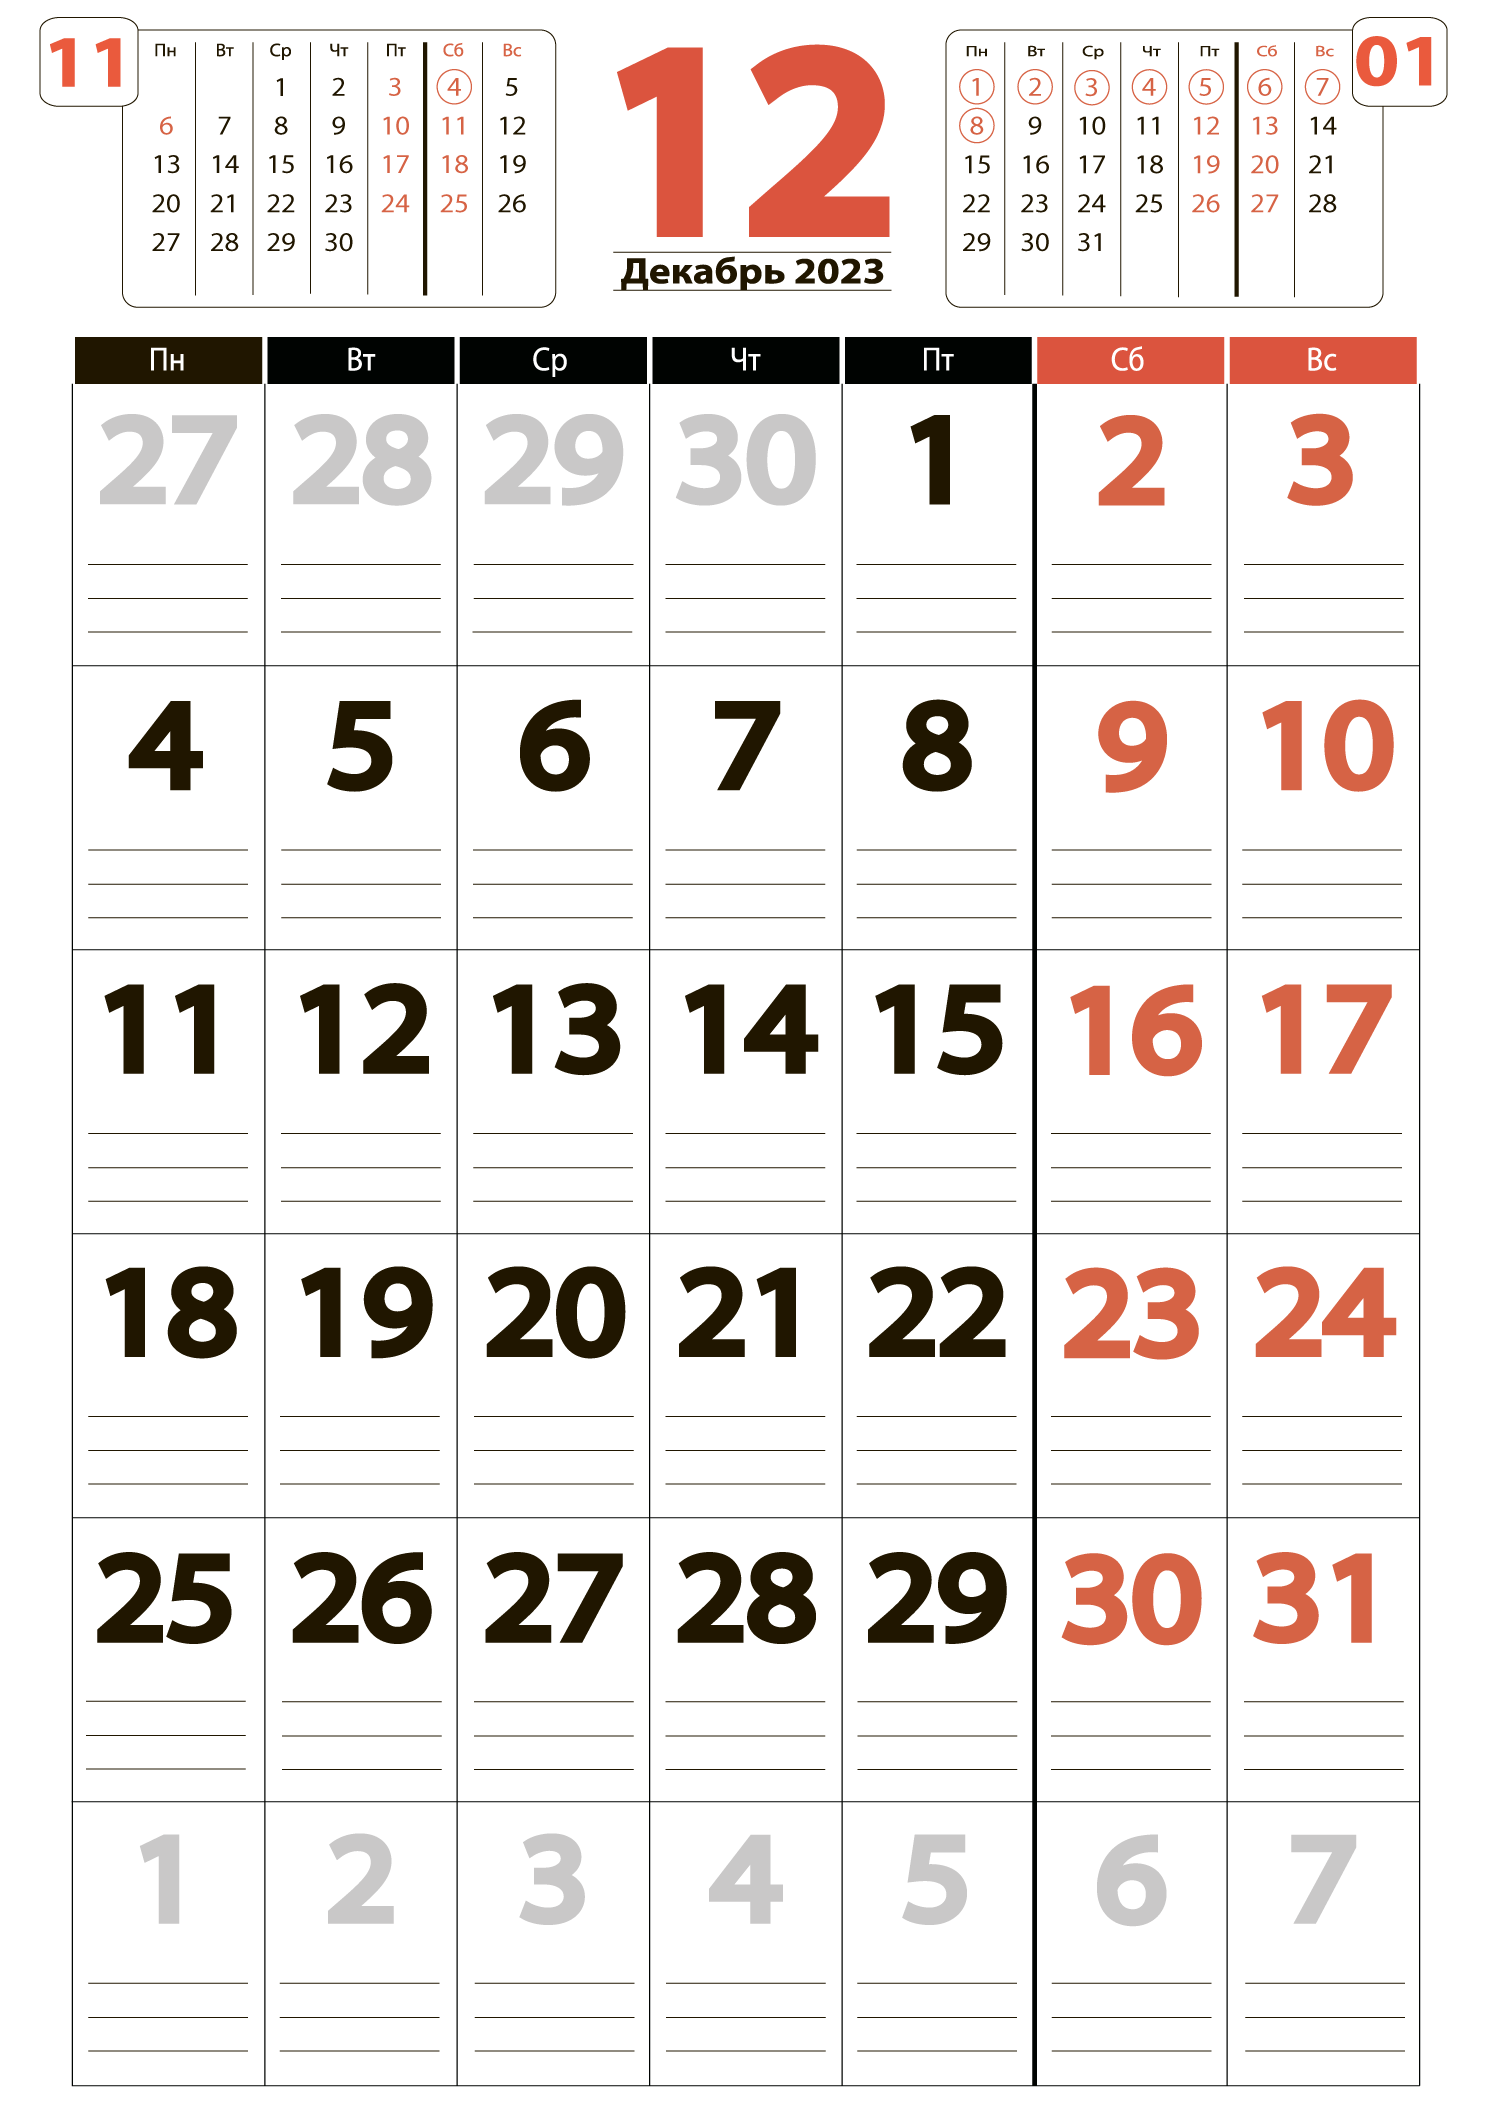 Календарь на декабрь 2023 - скачать